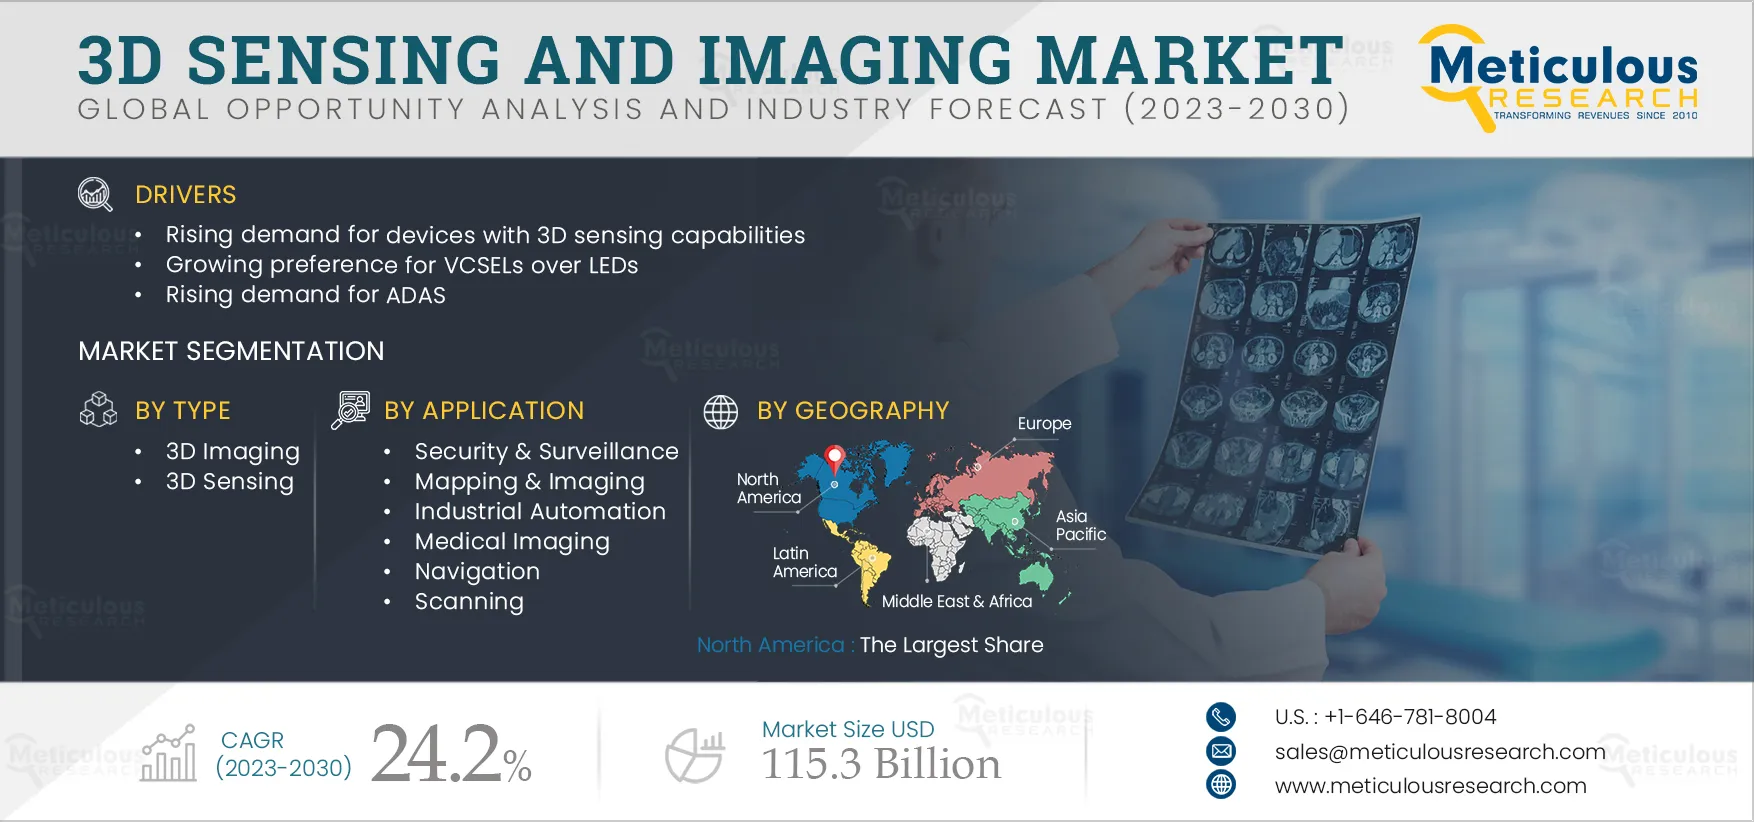 3D Sensing and Imaging Market